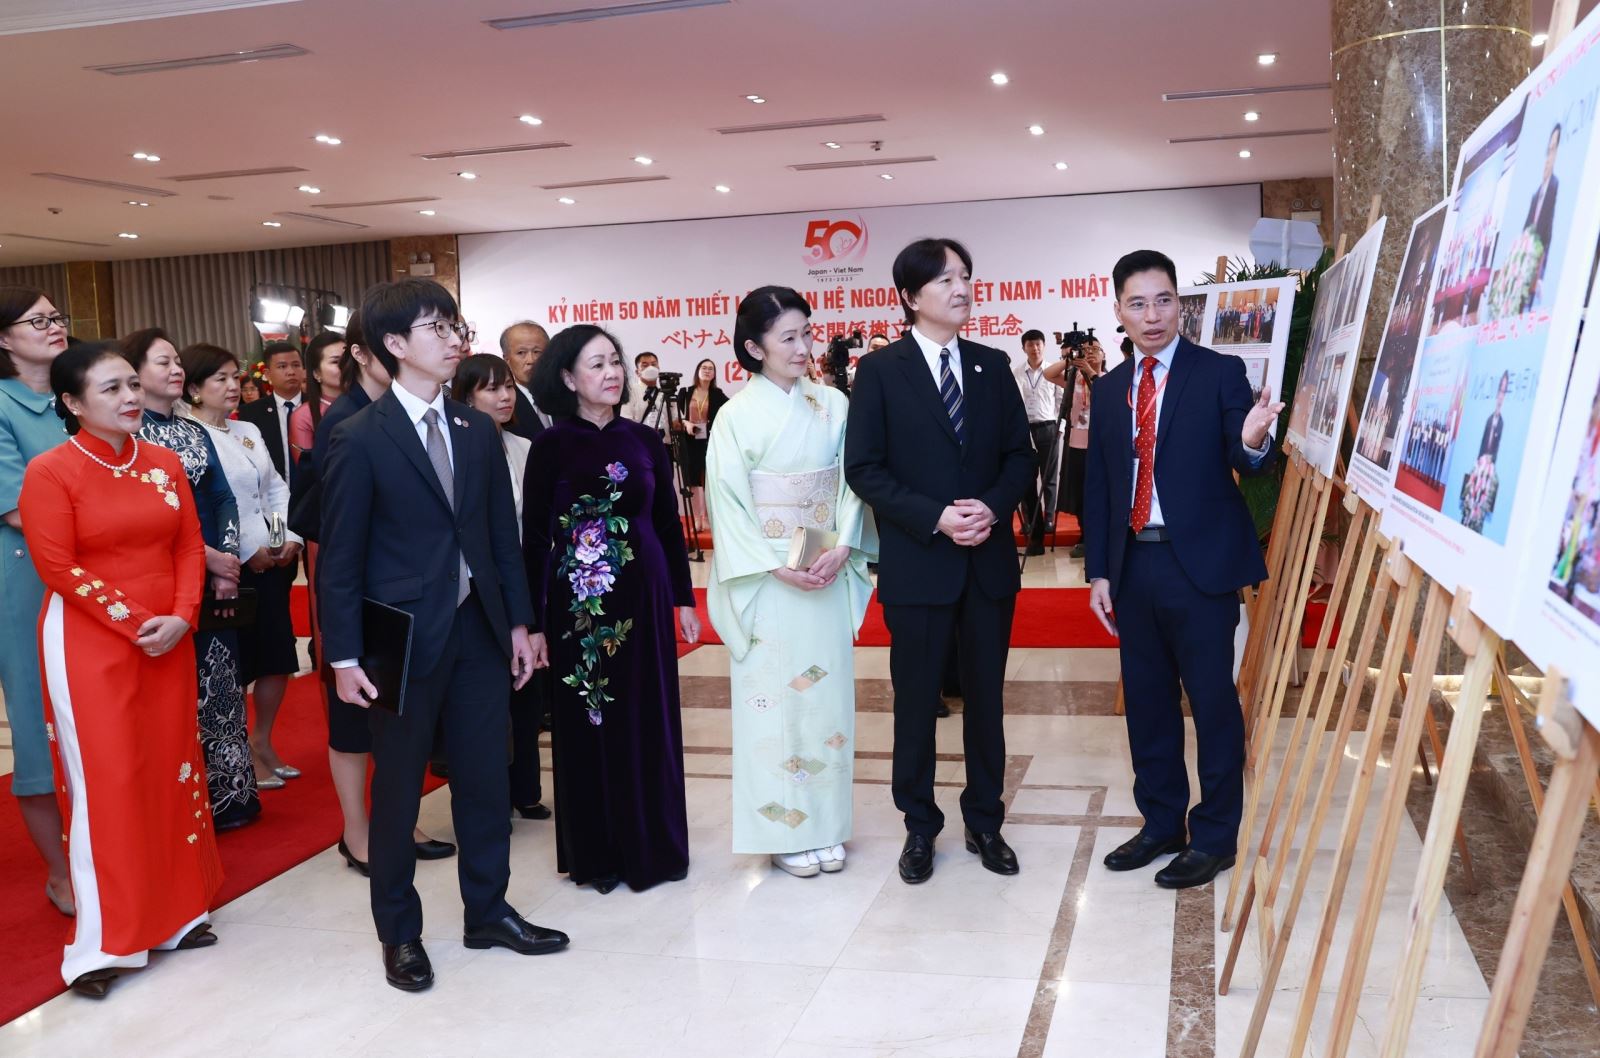 Việt Nam - Nhật Bản “tay trong tay” bước tiếp chặng đường tương lai, hợp tác bền chặt